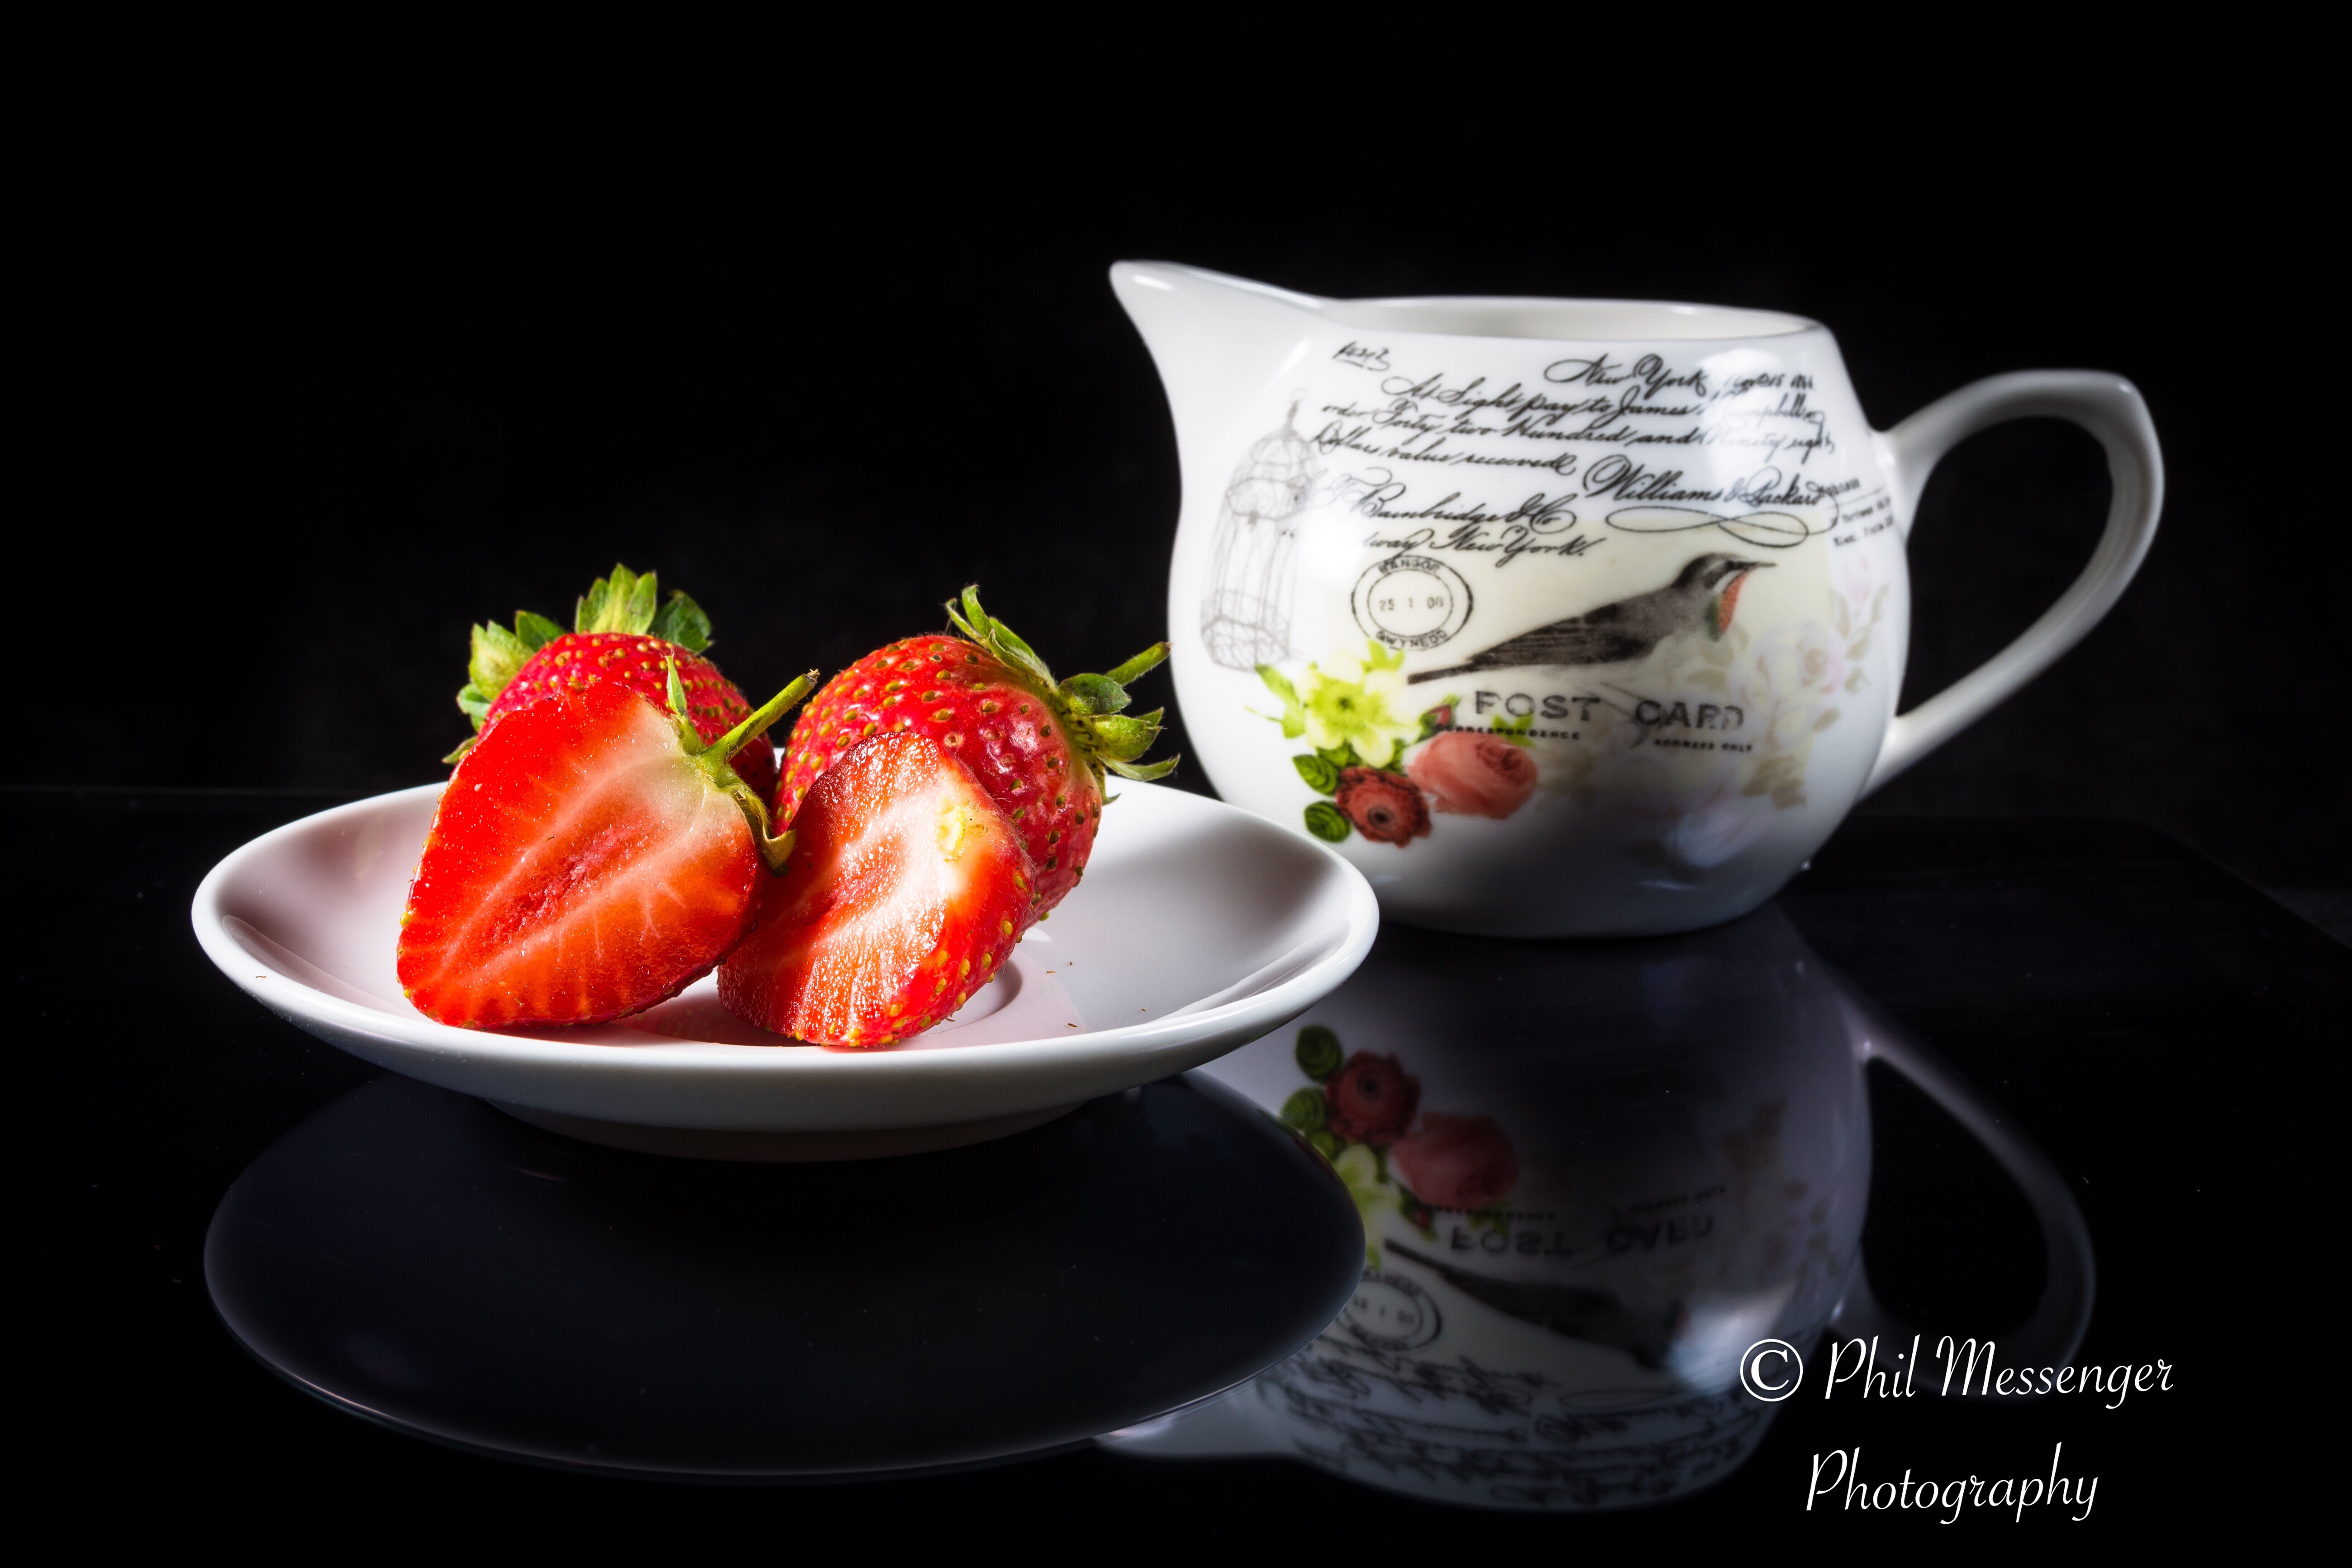 Strawberries and cream 